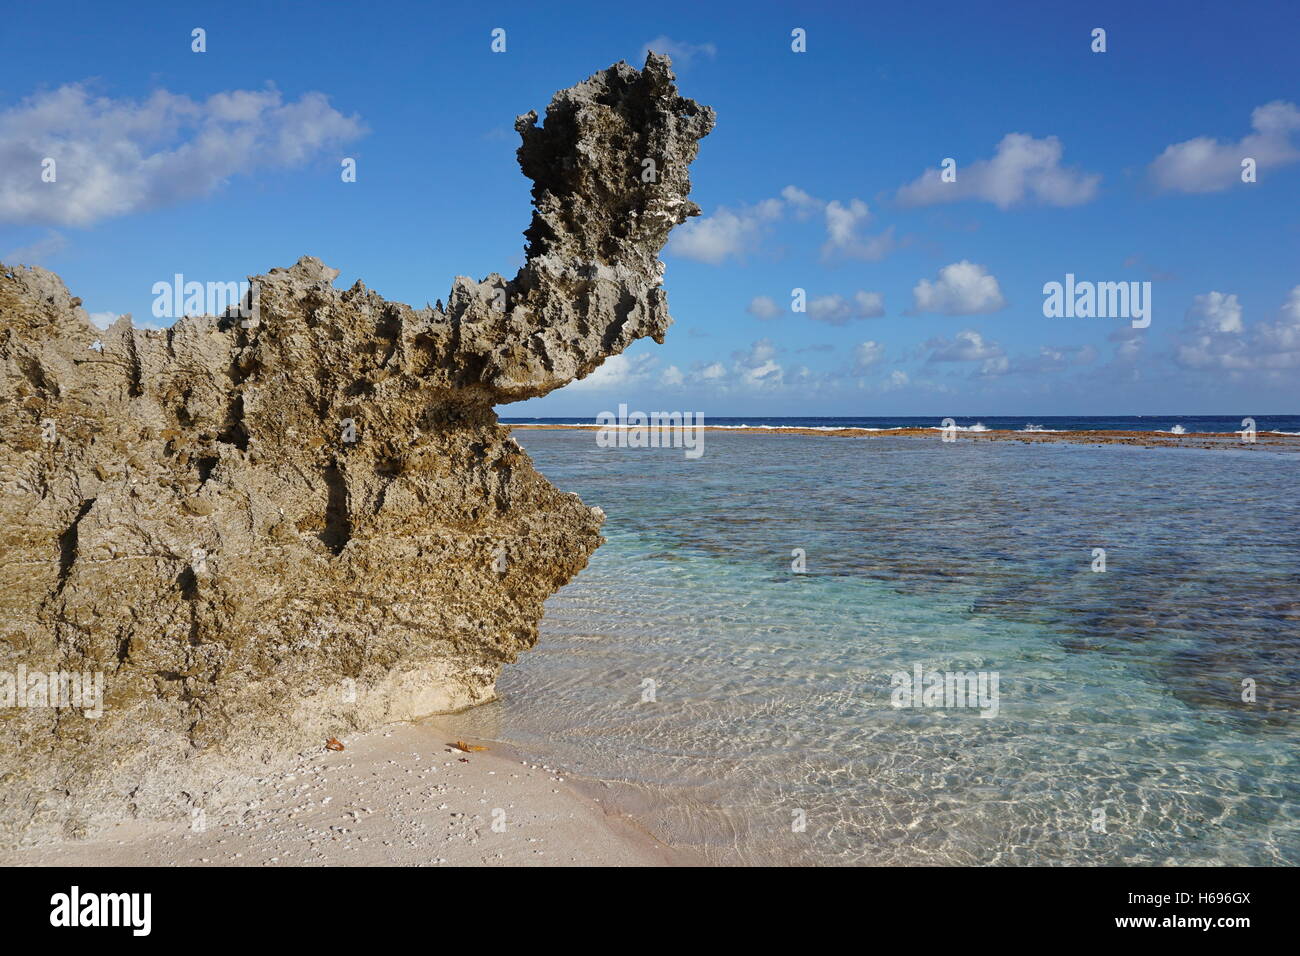 Roccia erosa formazione sulla riva del mare, atollo di Tikehau, Arcipelago Tuamotu, Polinesia francese, oceano pacifico Foto Stock